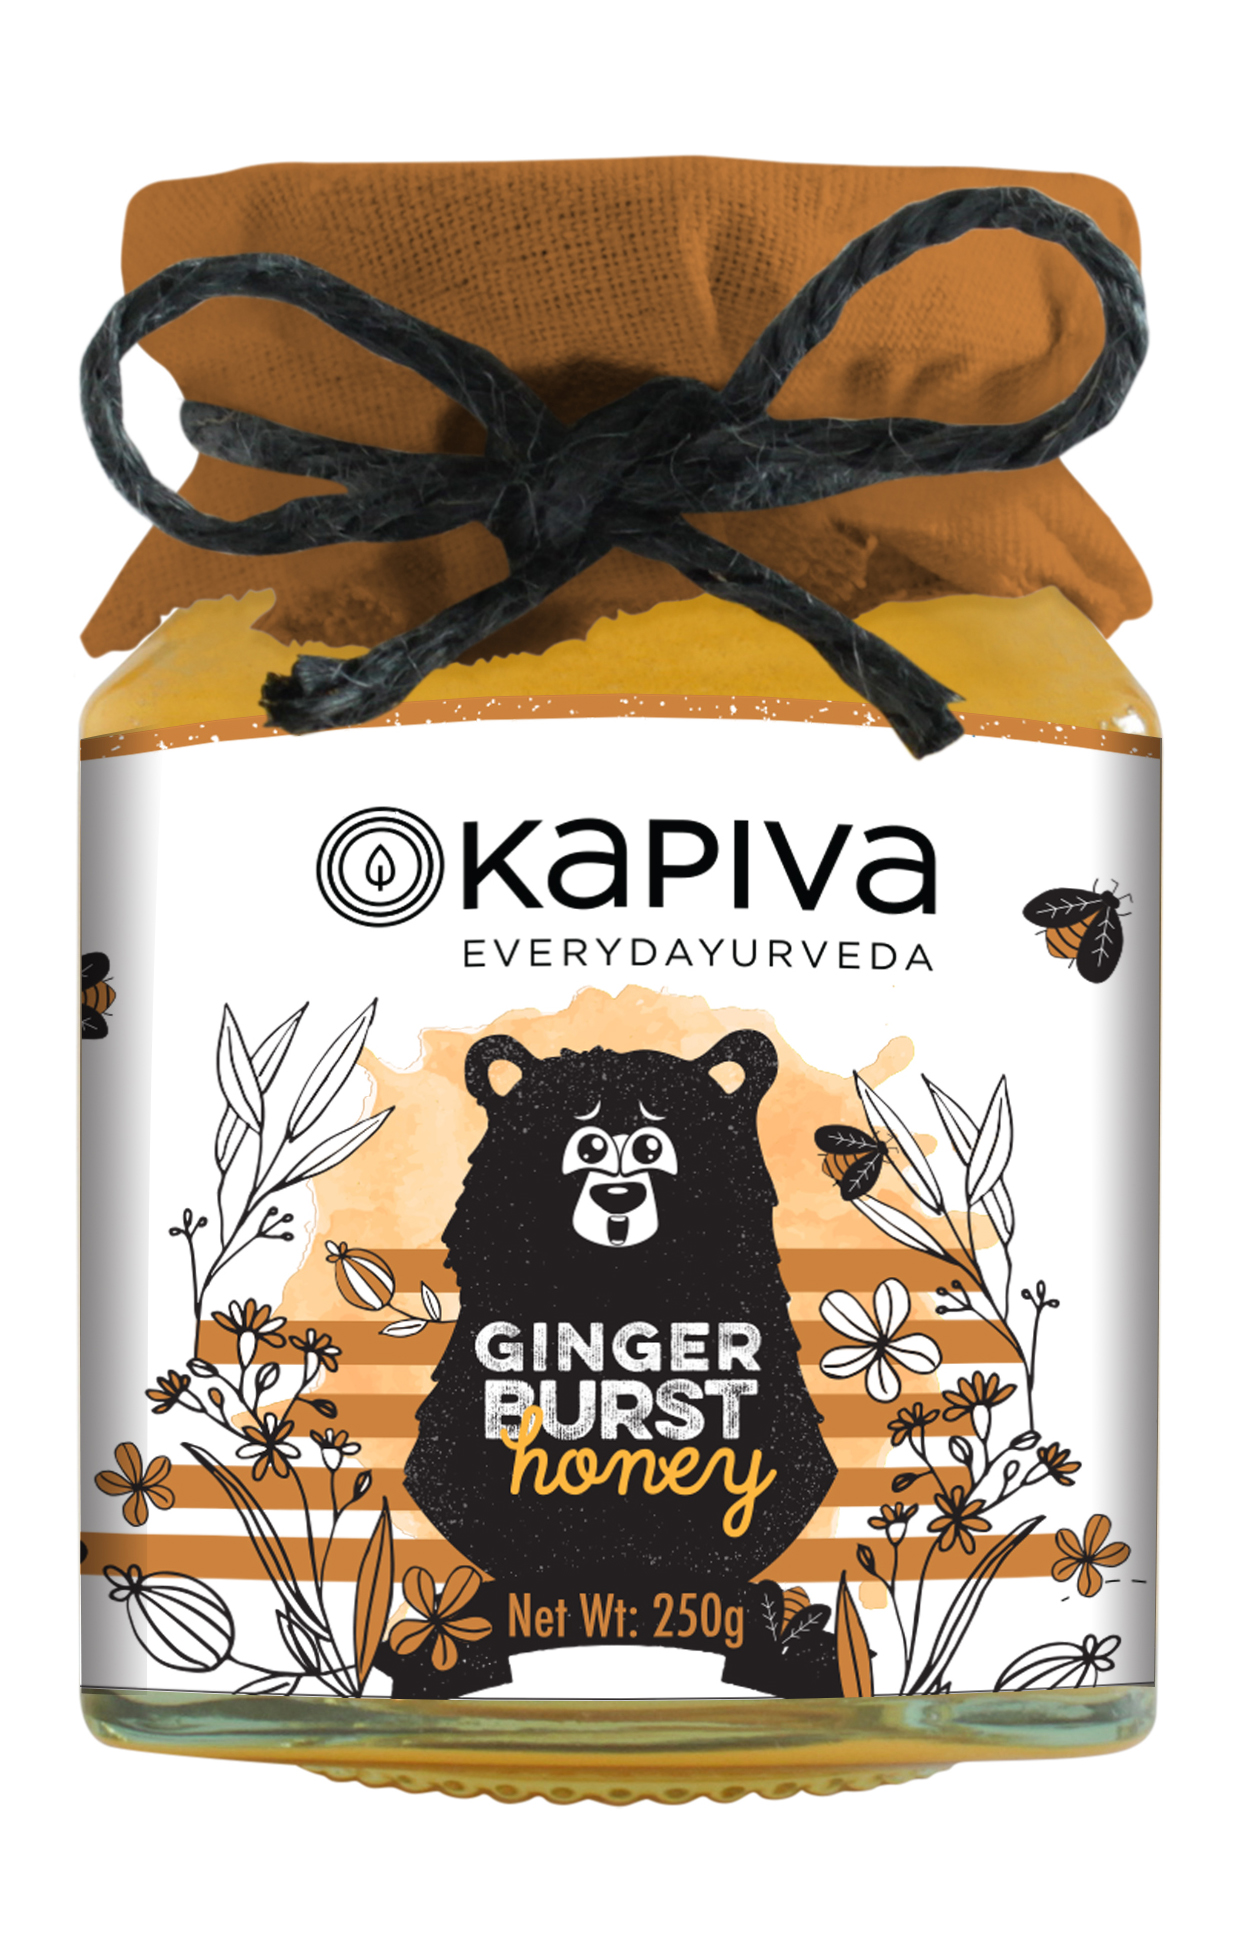 Buy Kapiva Ginger Burst Honey at Best Price Online